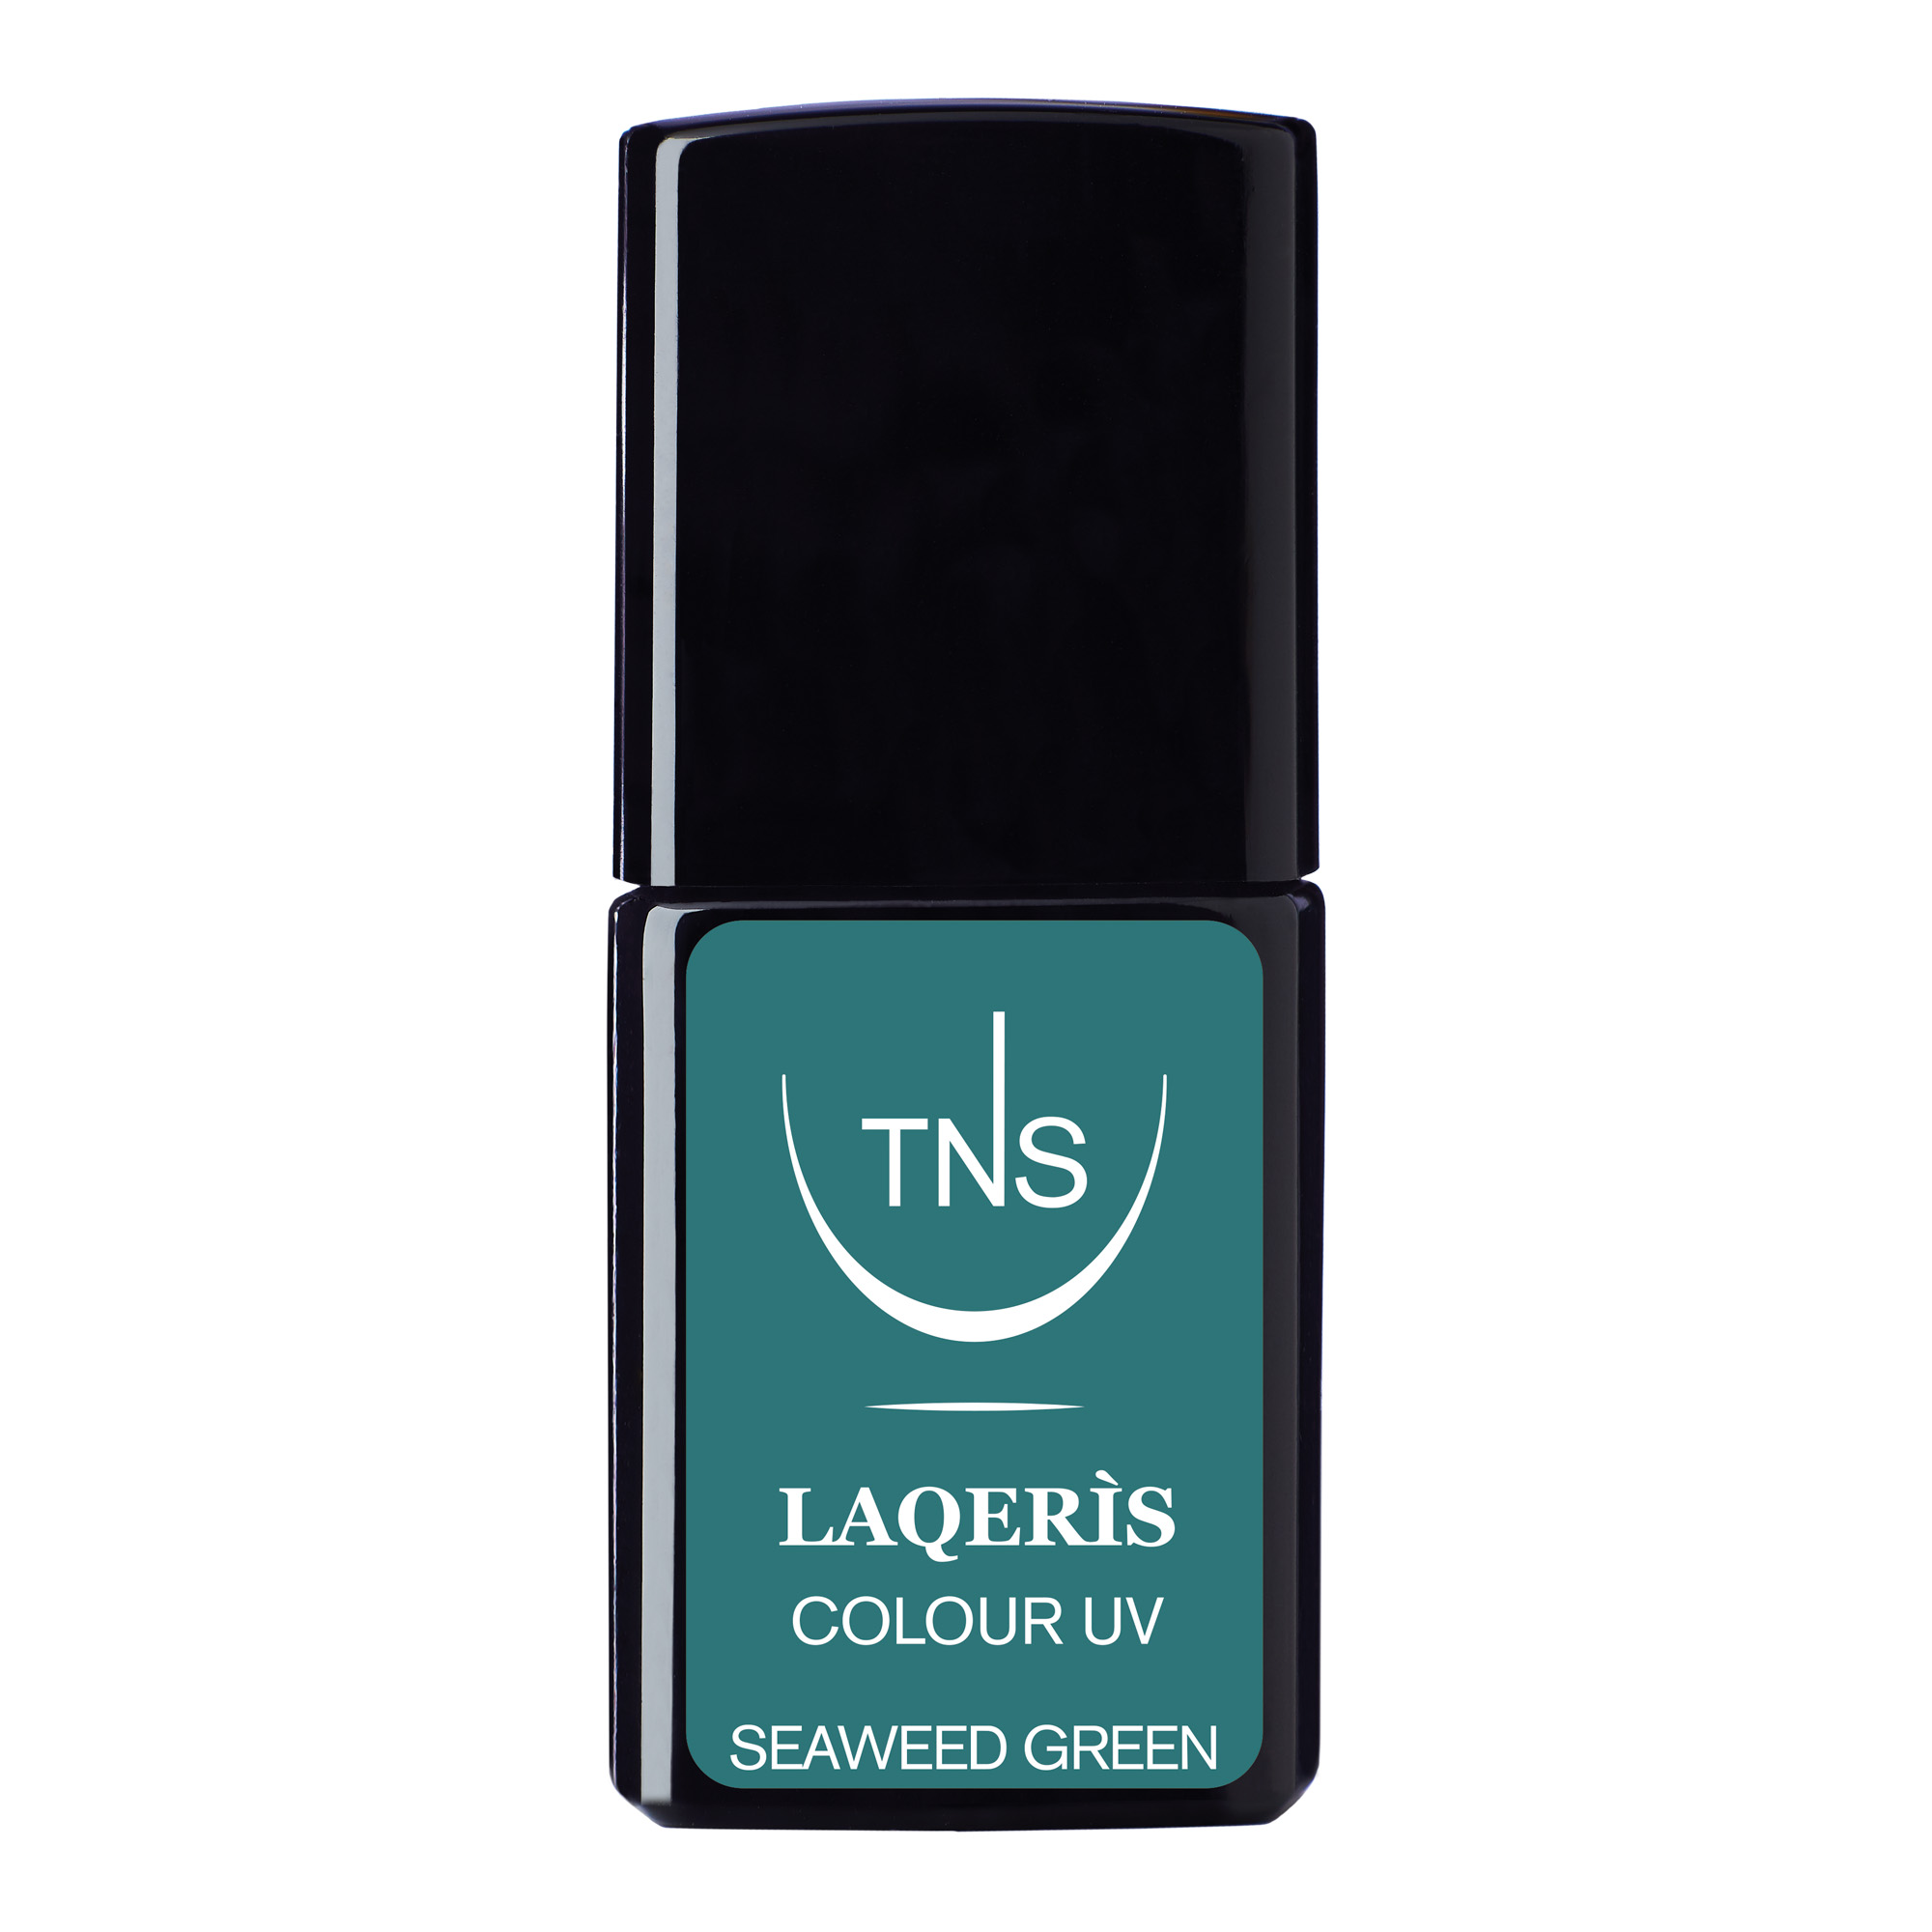 Semi-permanent nail polish Seaweed Green 10 ml Laqerìs TNS